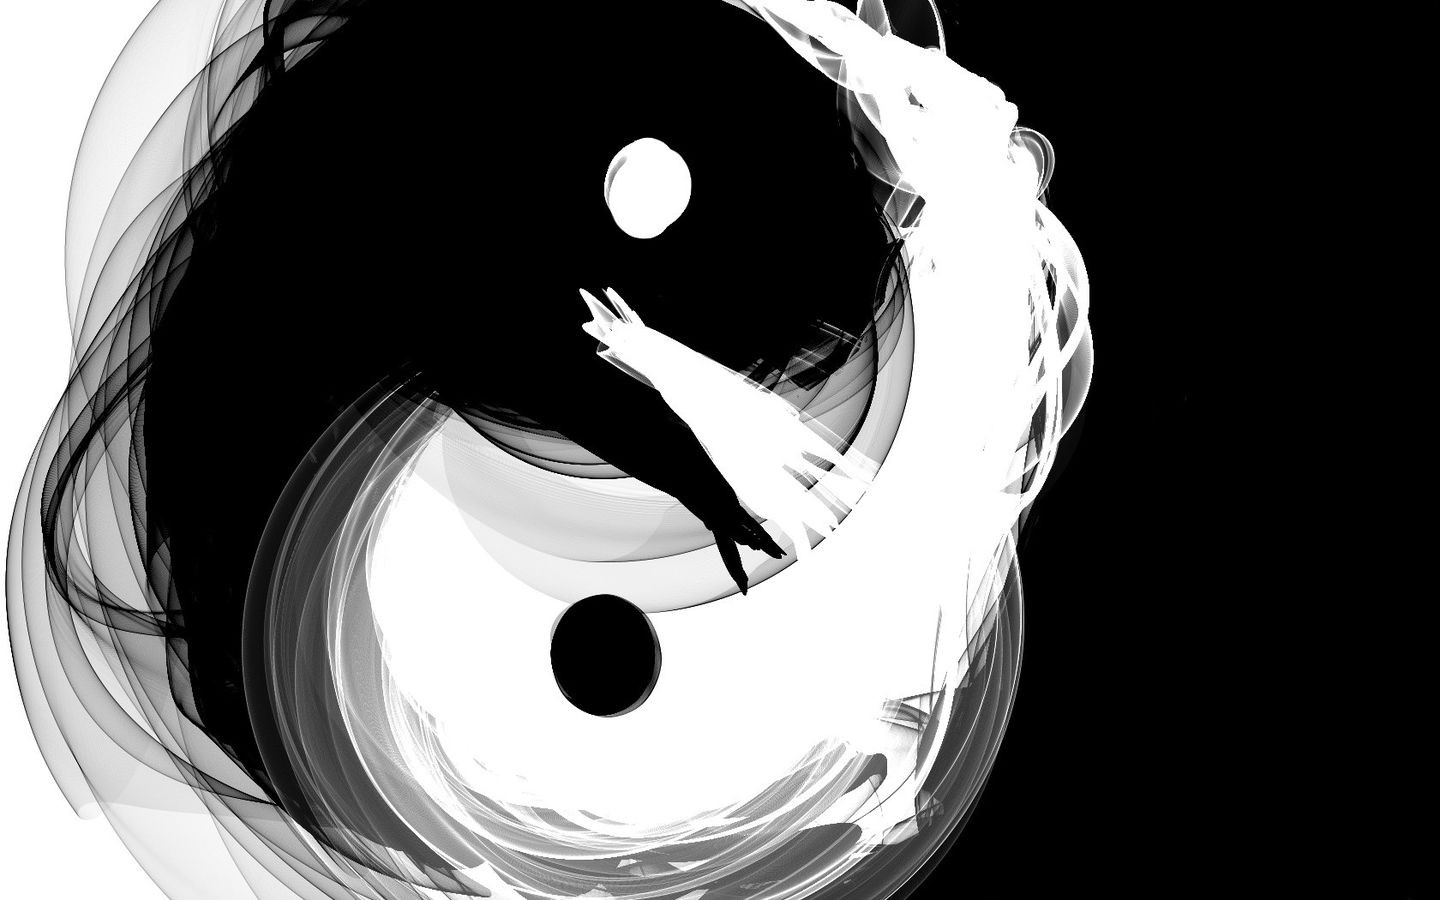 Yin And Yang Wallpaper